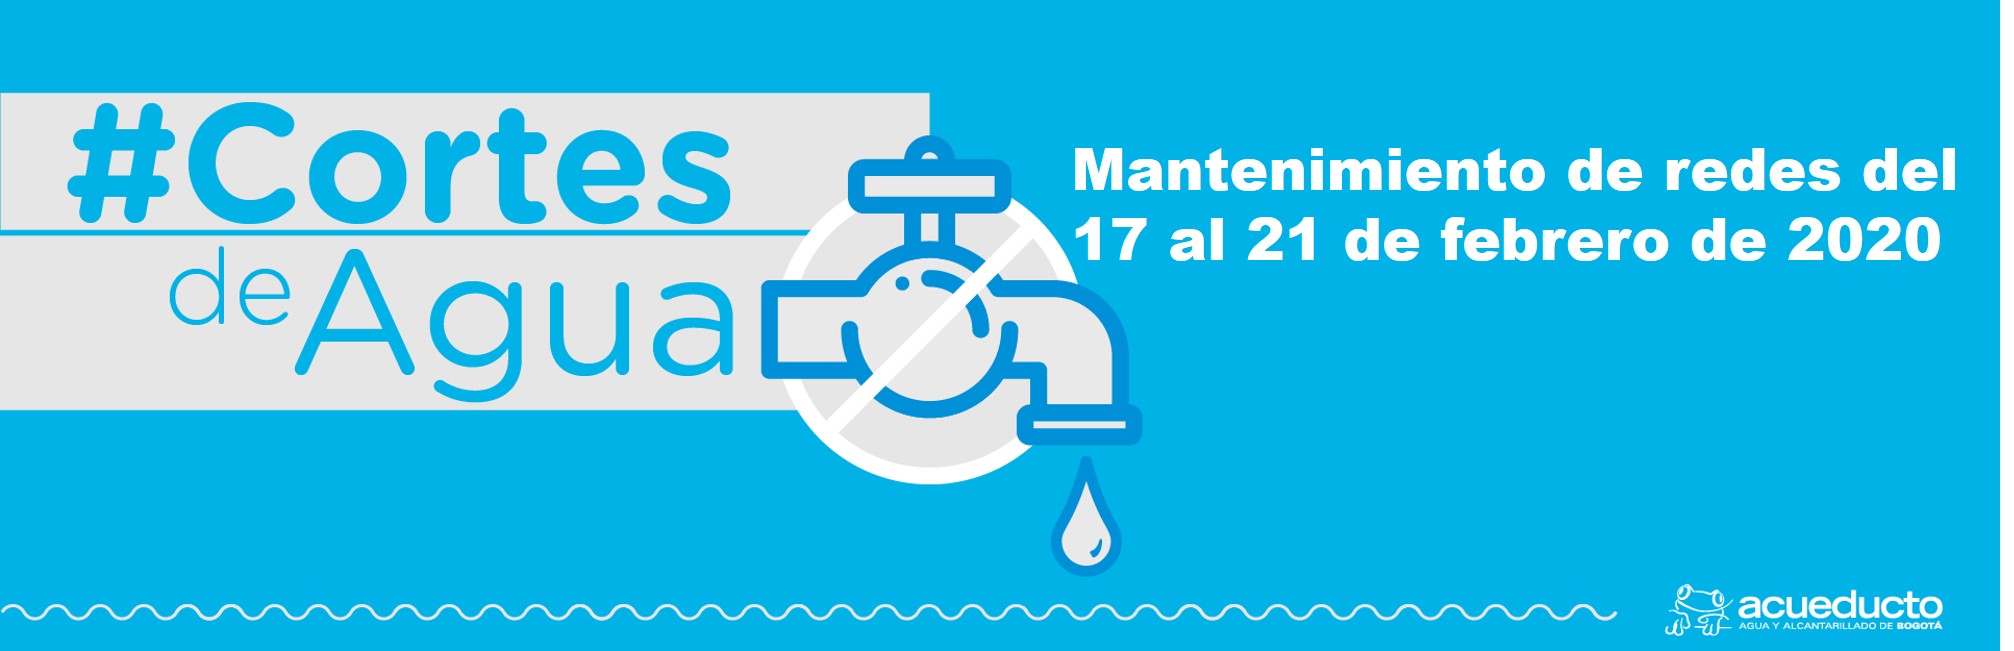 Programación cortes de agua por mantenimiento de redes del 17 al 21 de febrero de 2020